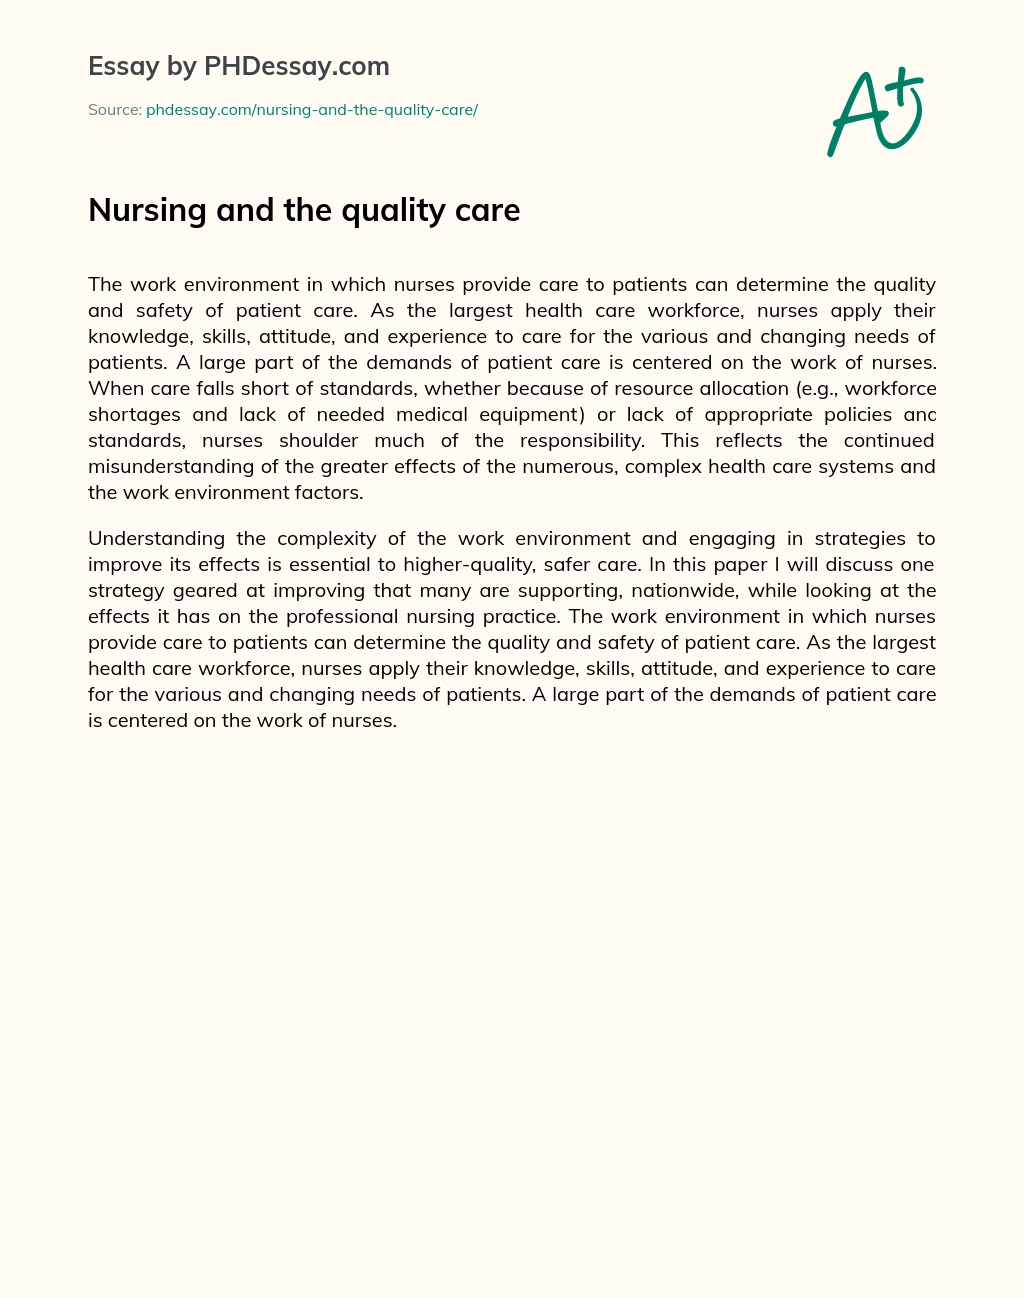 Nursing and the quality care essay